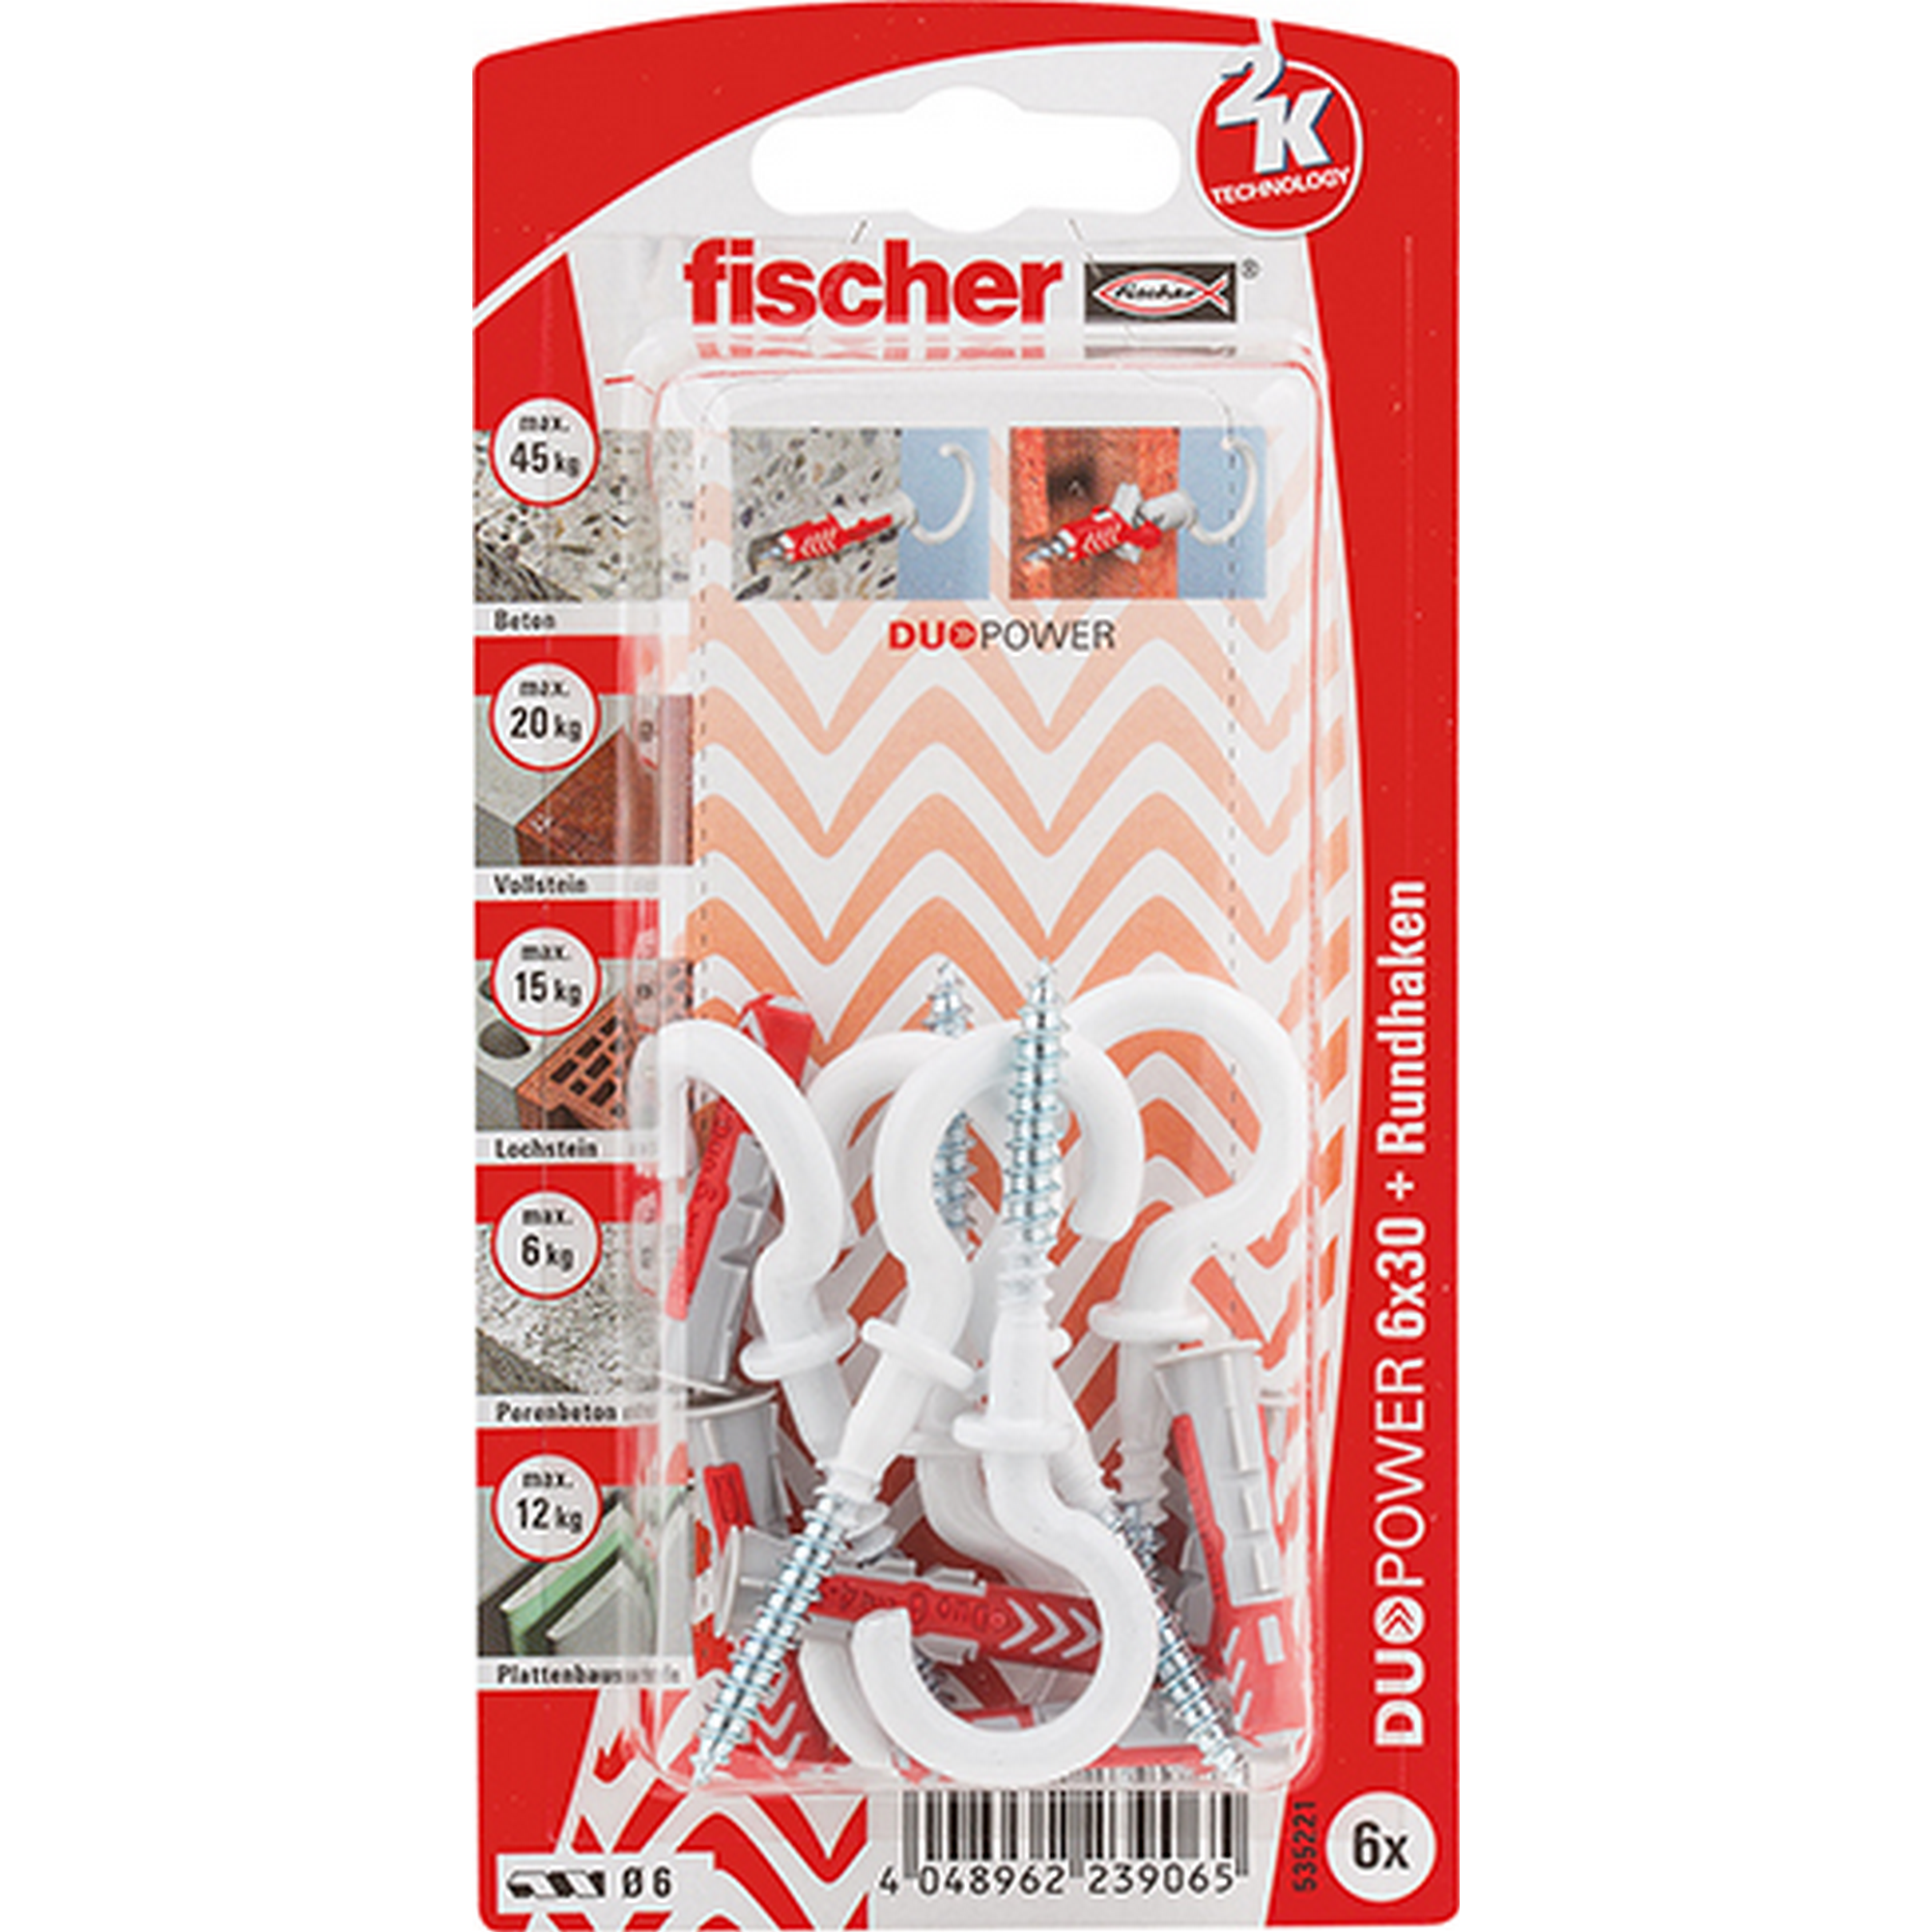 fischer DUOPOWER 6 x 30 RH mit Rundhaken, nylonbeschichtet 6 Stück + product picture